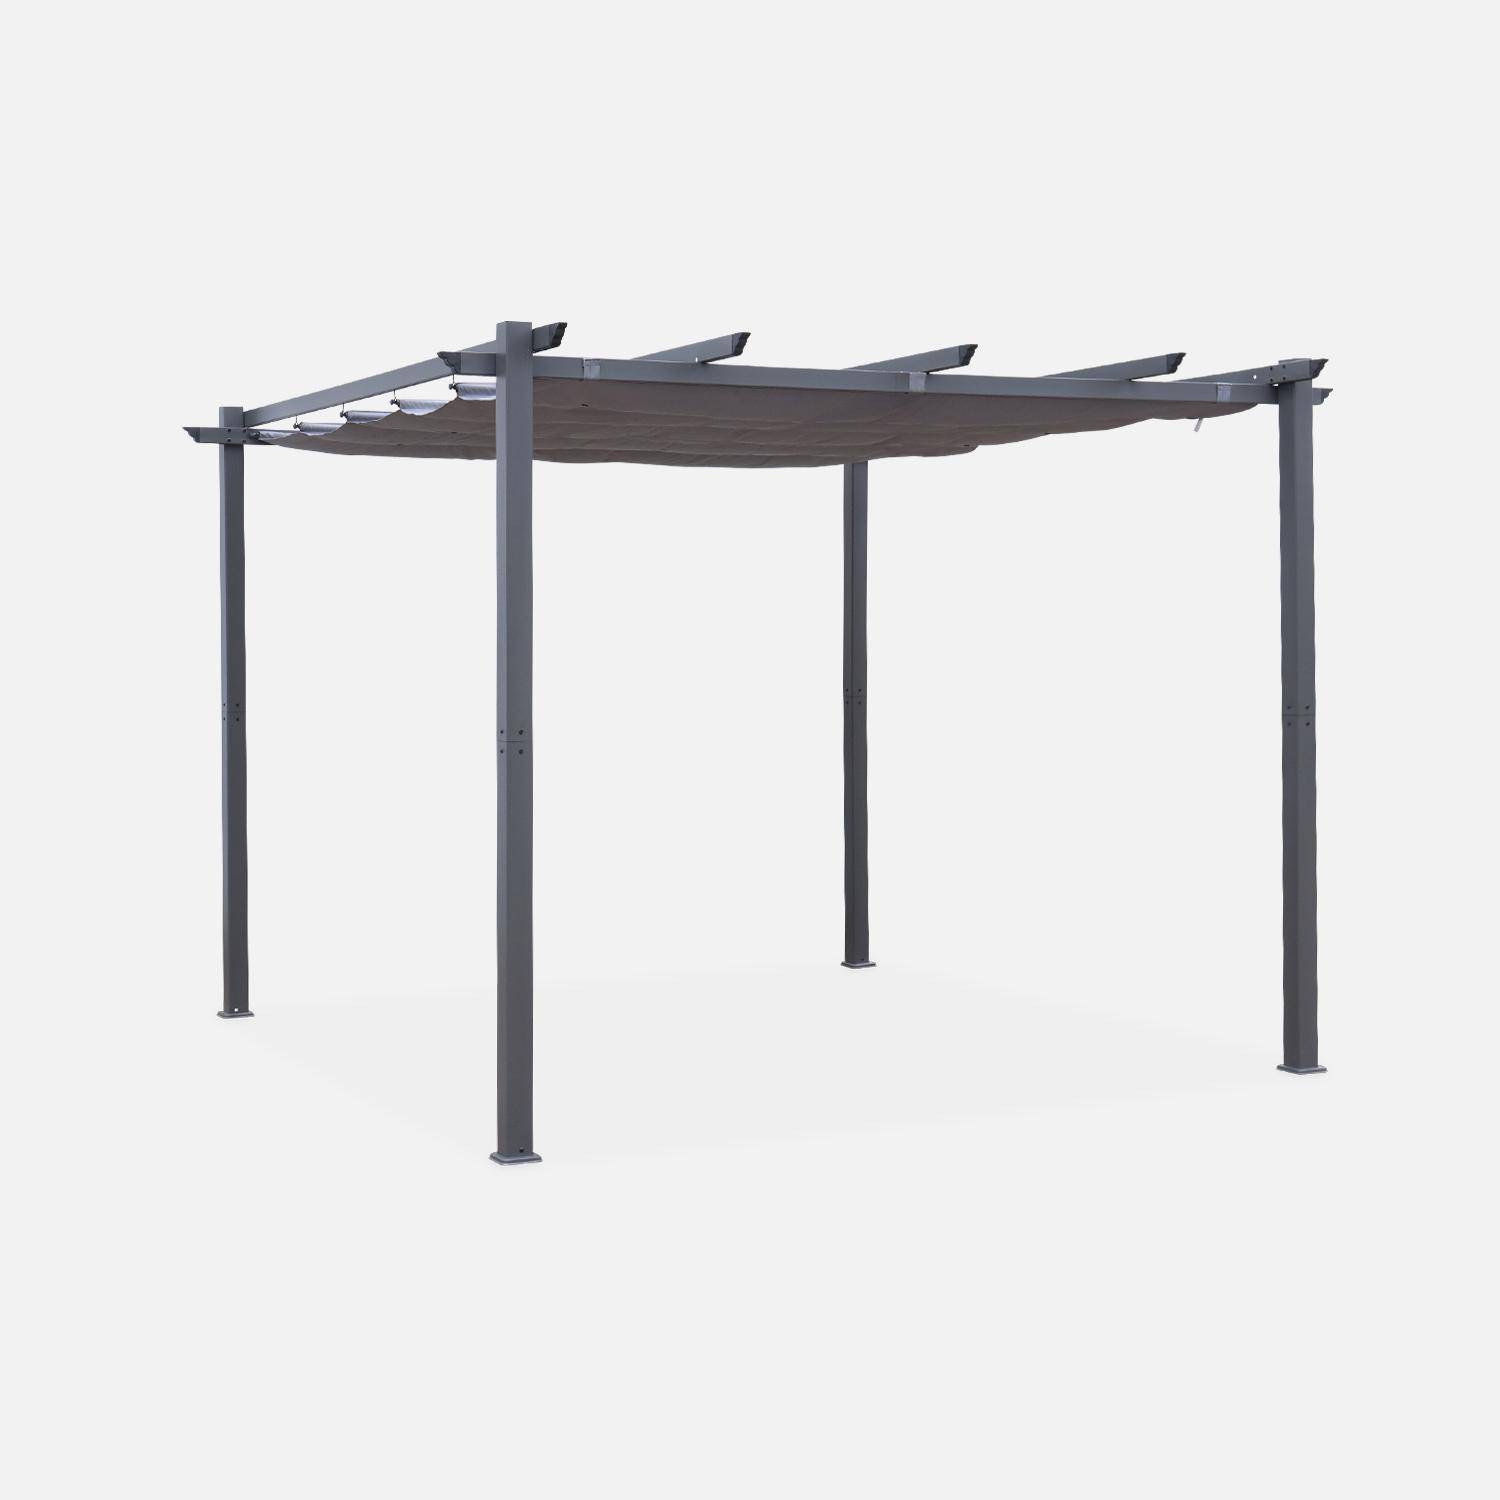 Pergola en aluminium - Isla 3x3m - Toile grise - Pergola idéale pour votre terrasse, toit rétractable, toile coulissante, structure en aluminium Photo1